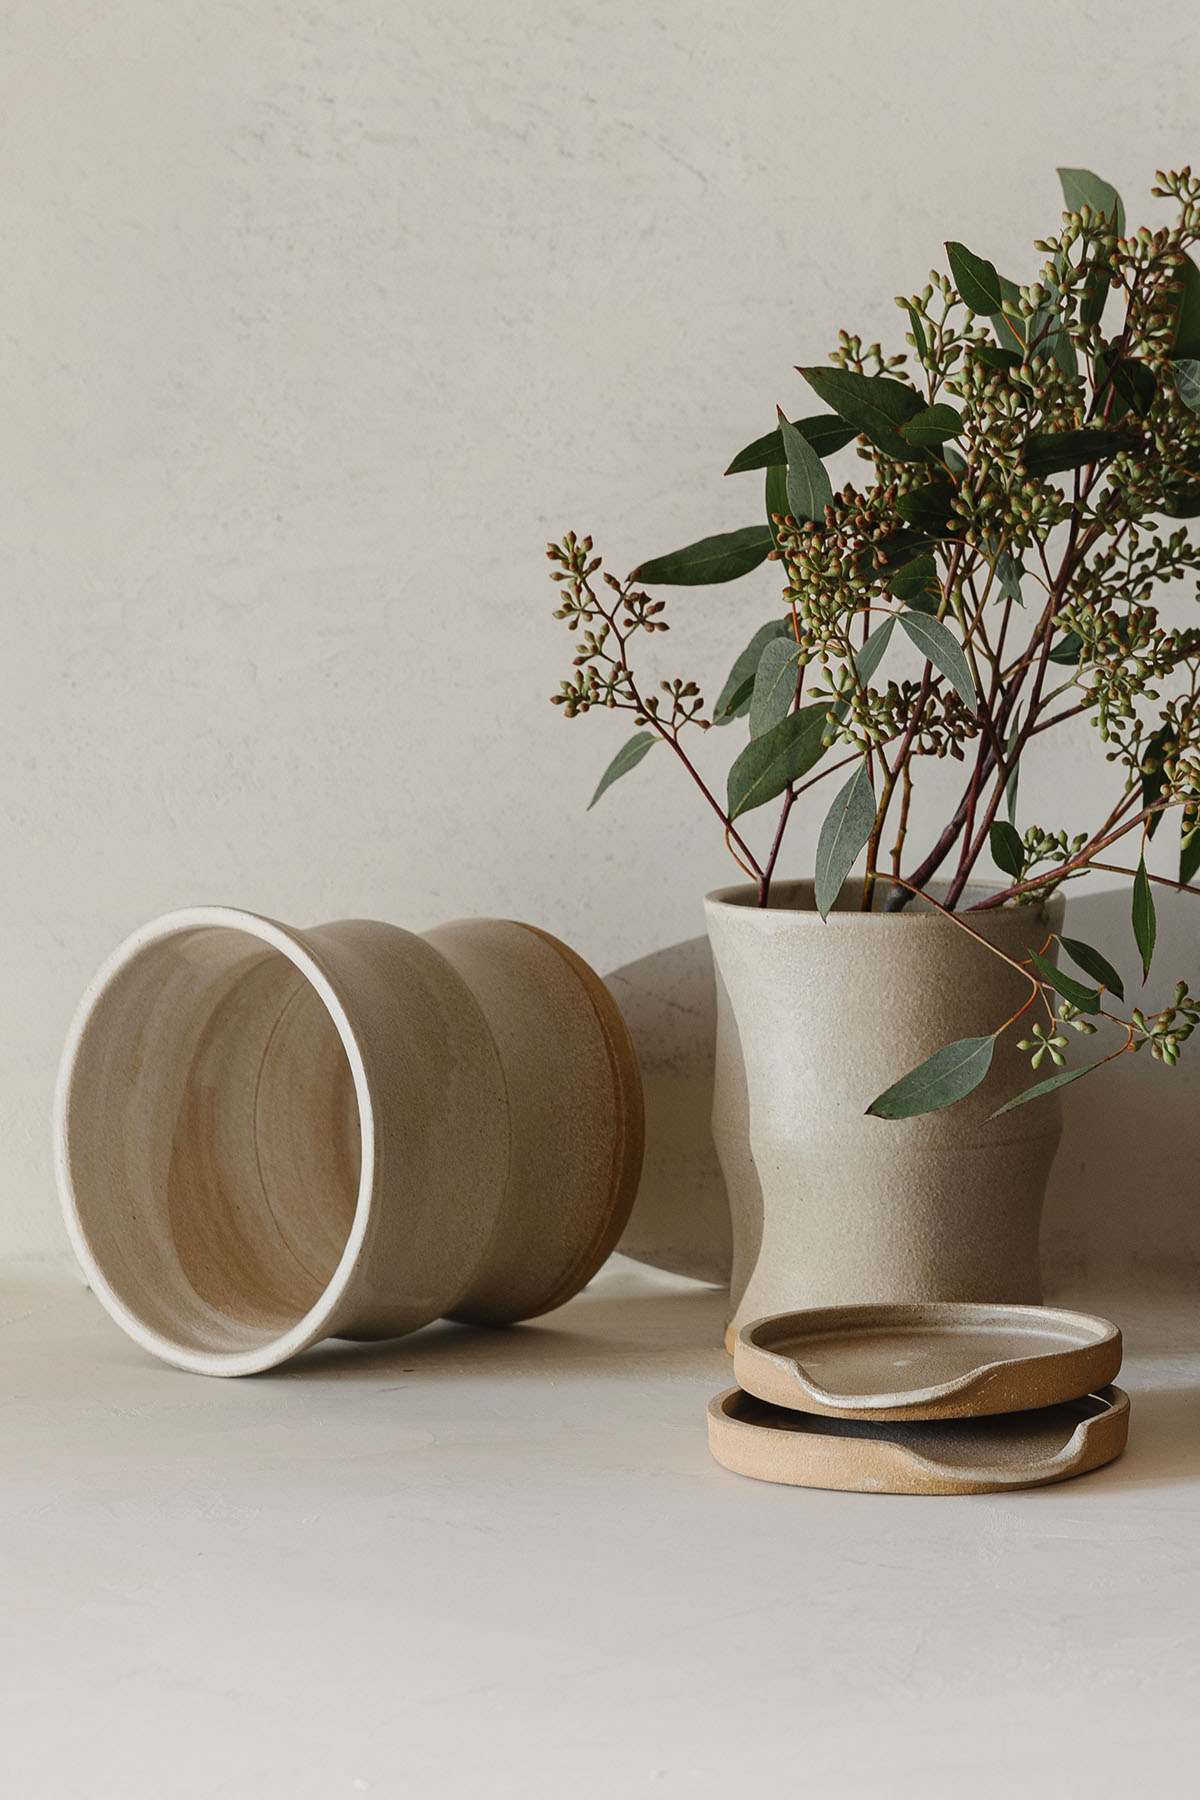 Succulent planters Ikebana vases - Kiln Fired Art